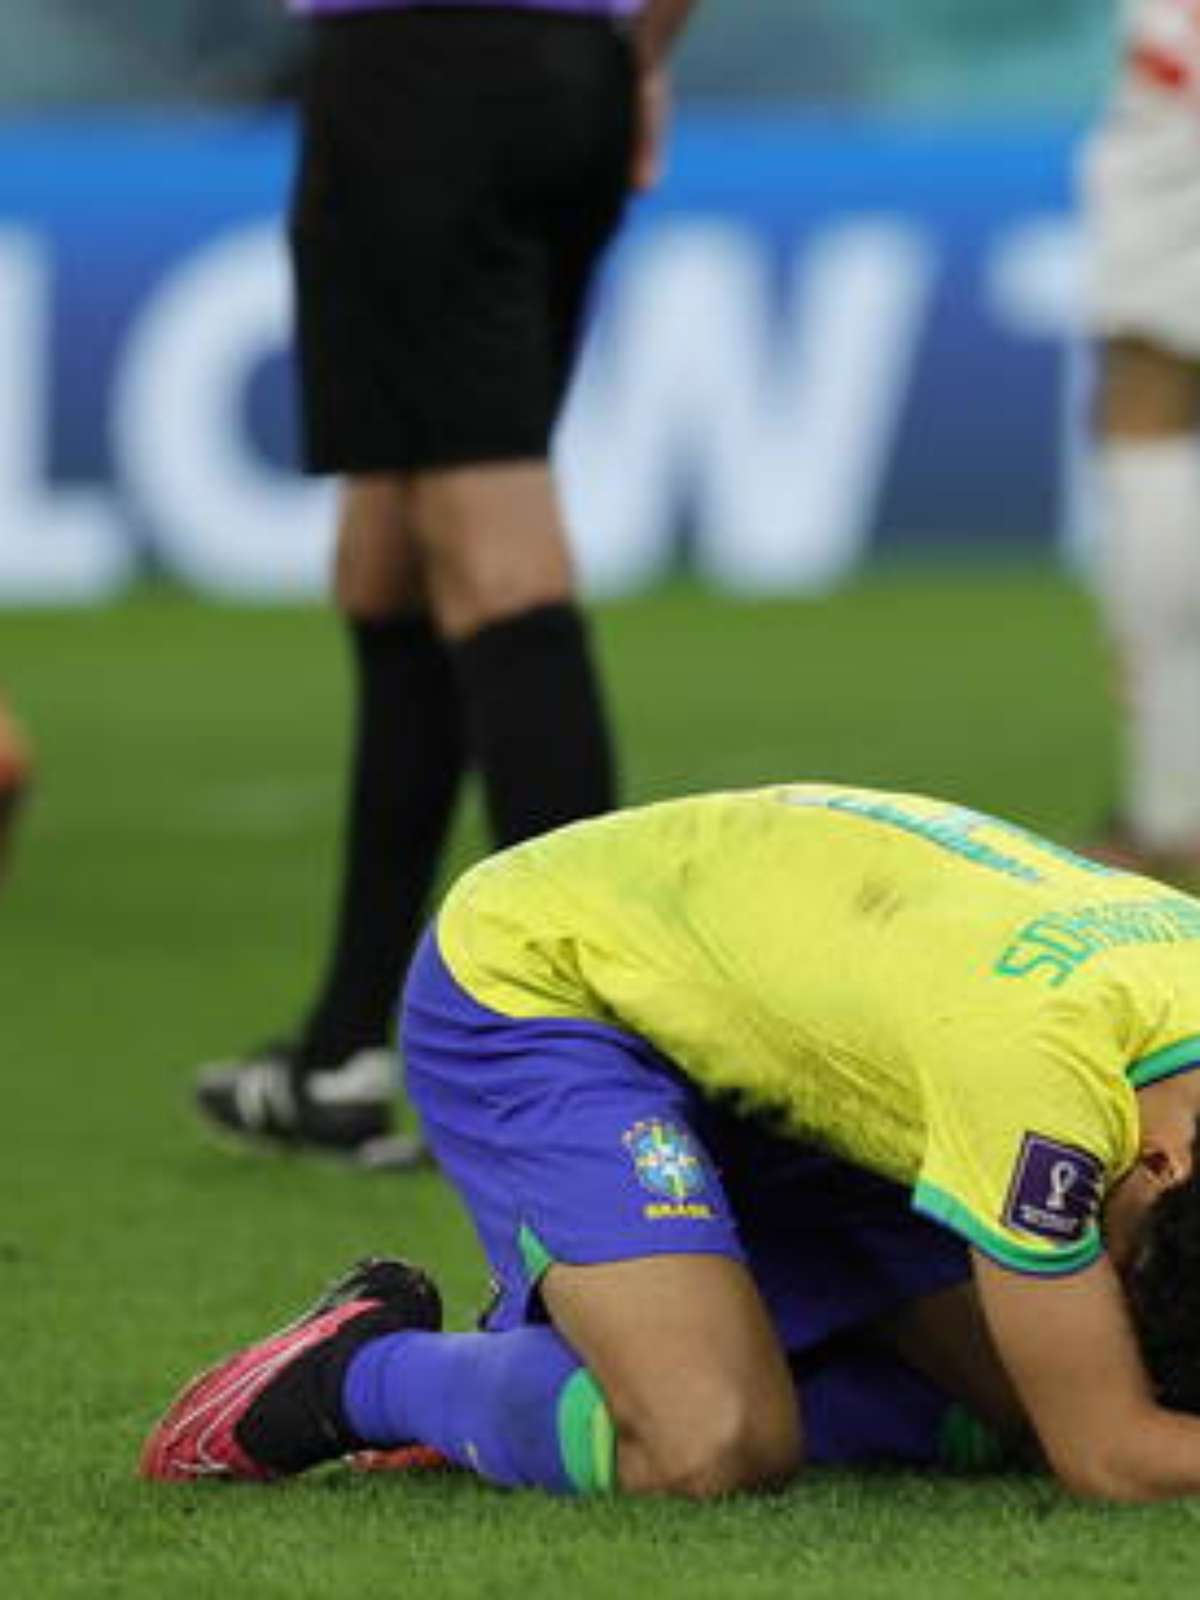 Doentes por Futebol - Achou que a SeleTite ia perder, amigo? Achou errado.  🇧🇷 📸 @lucasfigfoto, @cbf_futebol